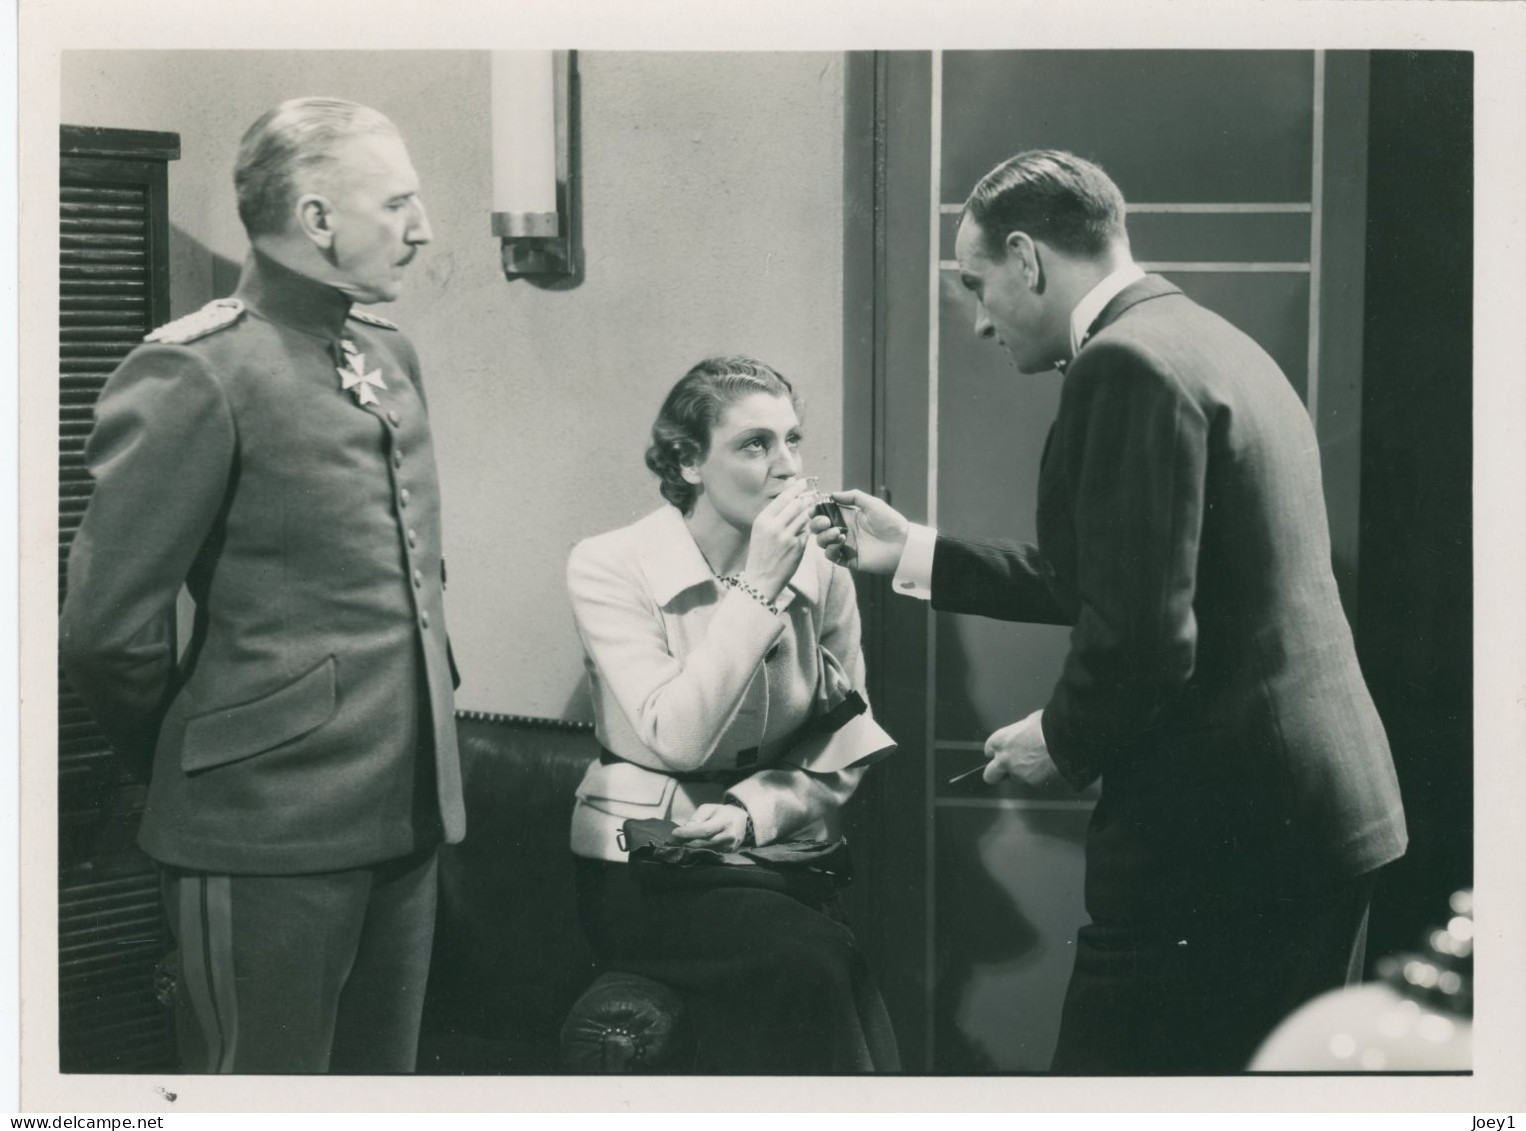 Photo Véra Korène, Georges Prieur Dans Le Film 2ème Bureau De Pierre Billon En 1935 - Beroemde Personen